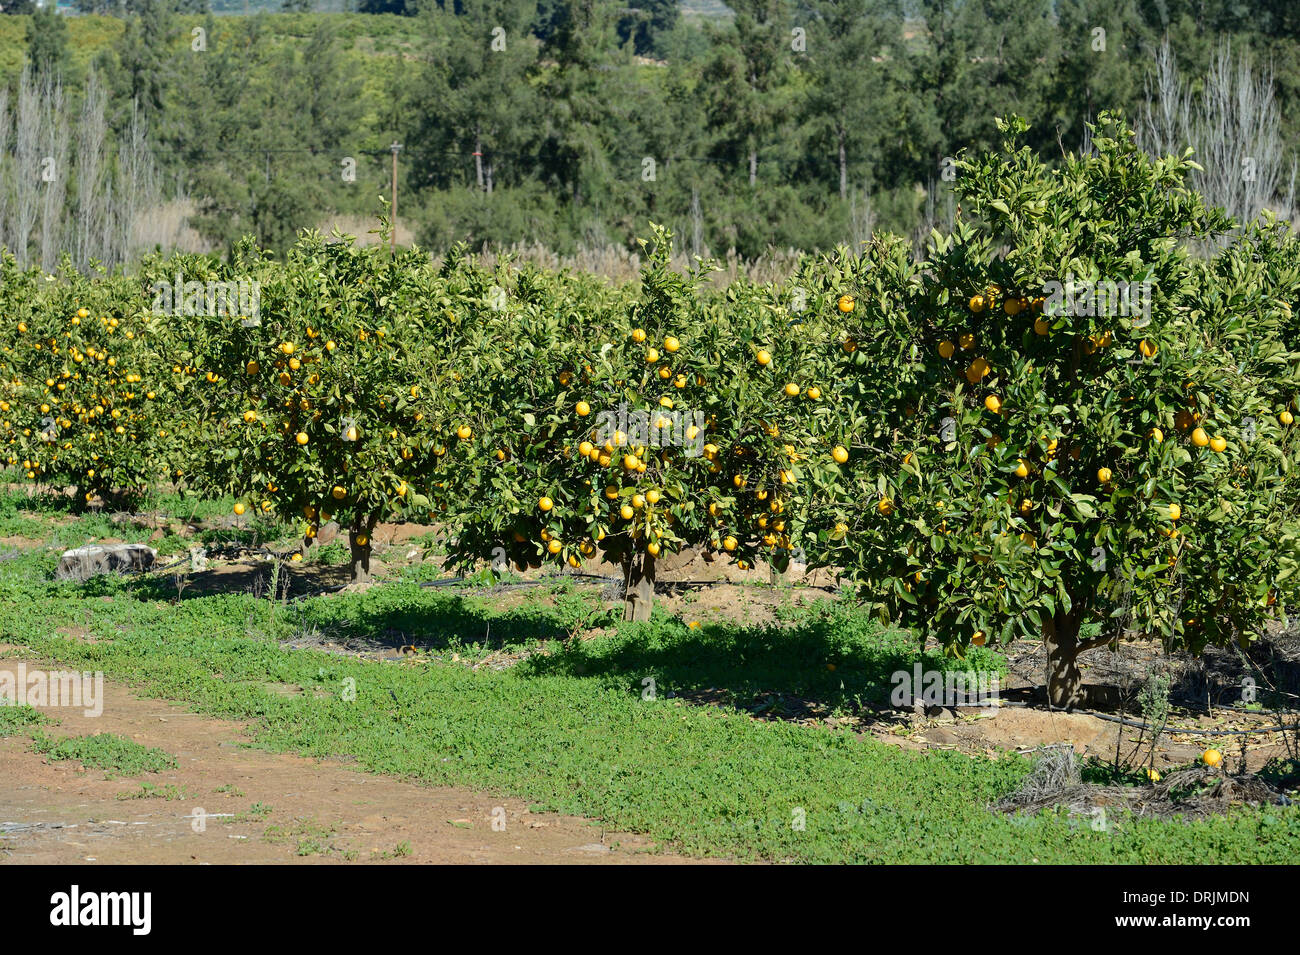 Oranges dans les arbres d'une plantation à Clanwilliam, cap ouest, Western Cape, Afrique du Sud, Afrique, Orangen une Baeumen in einer Pl Banque D'Images